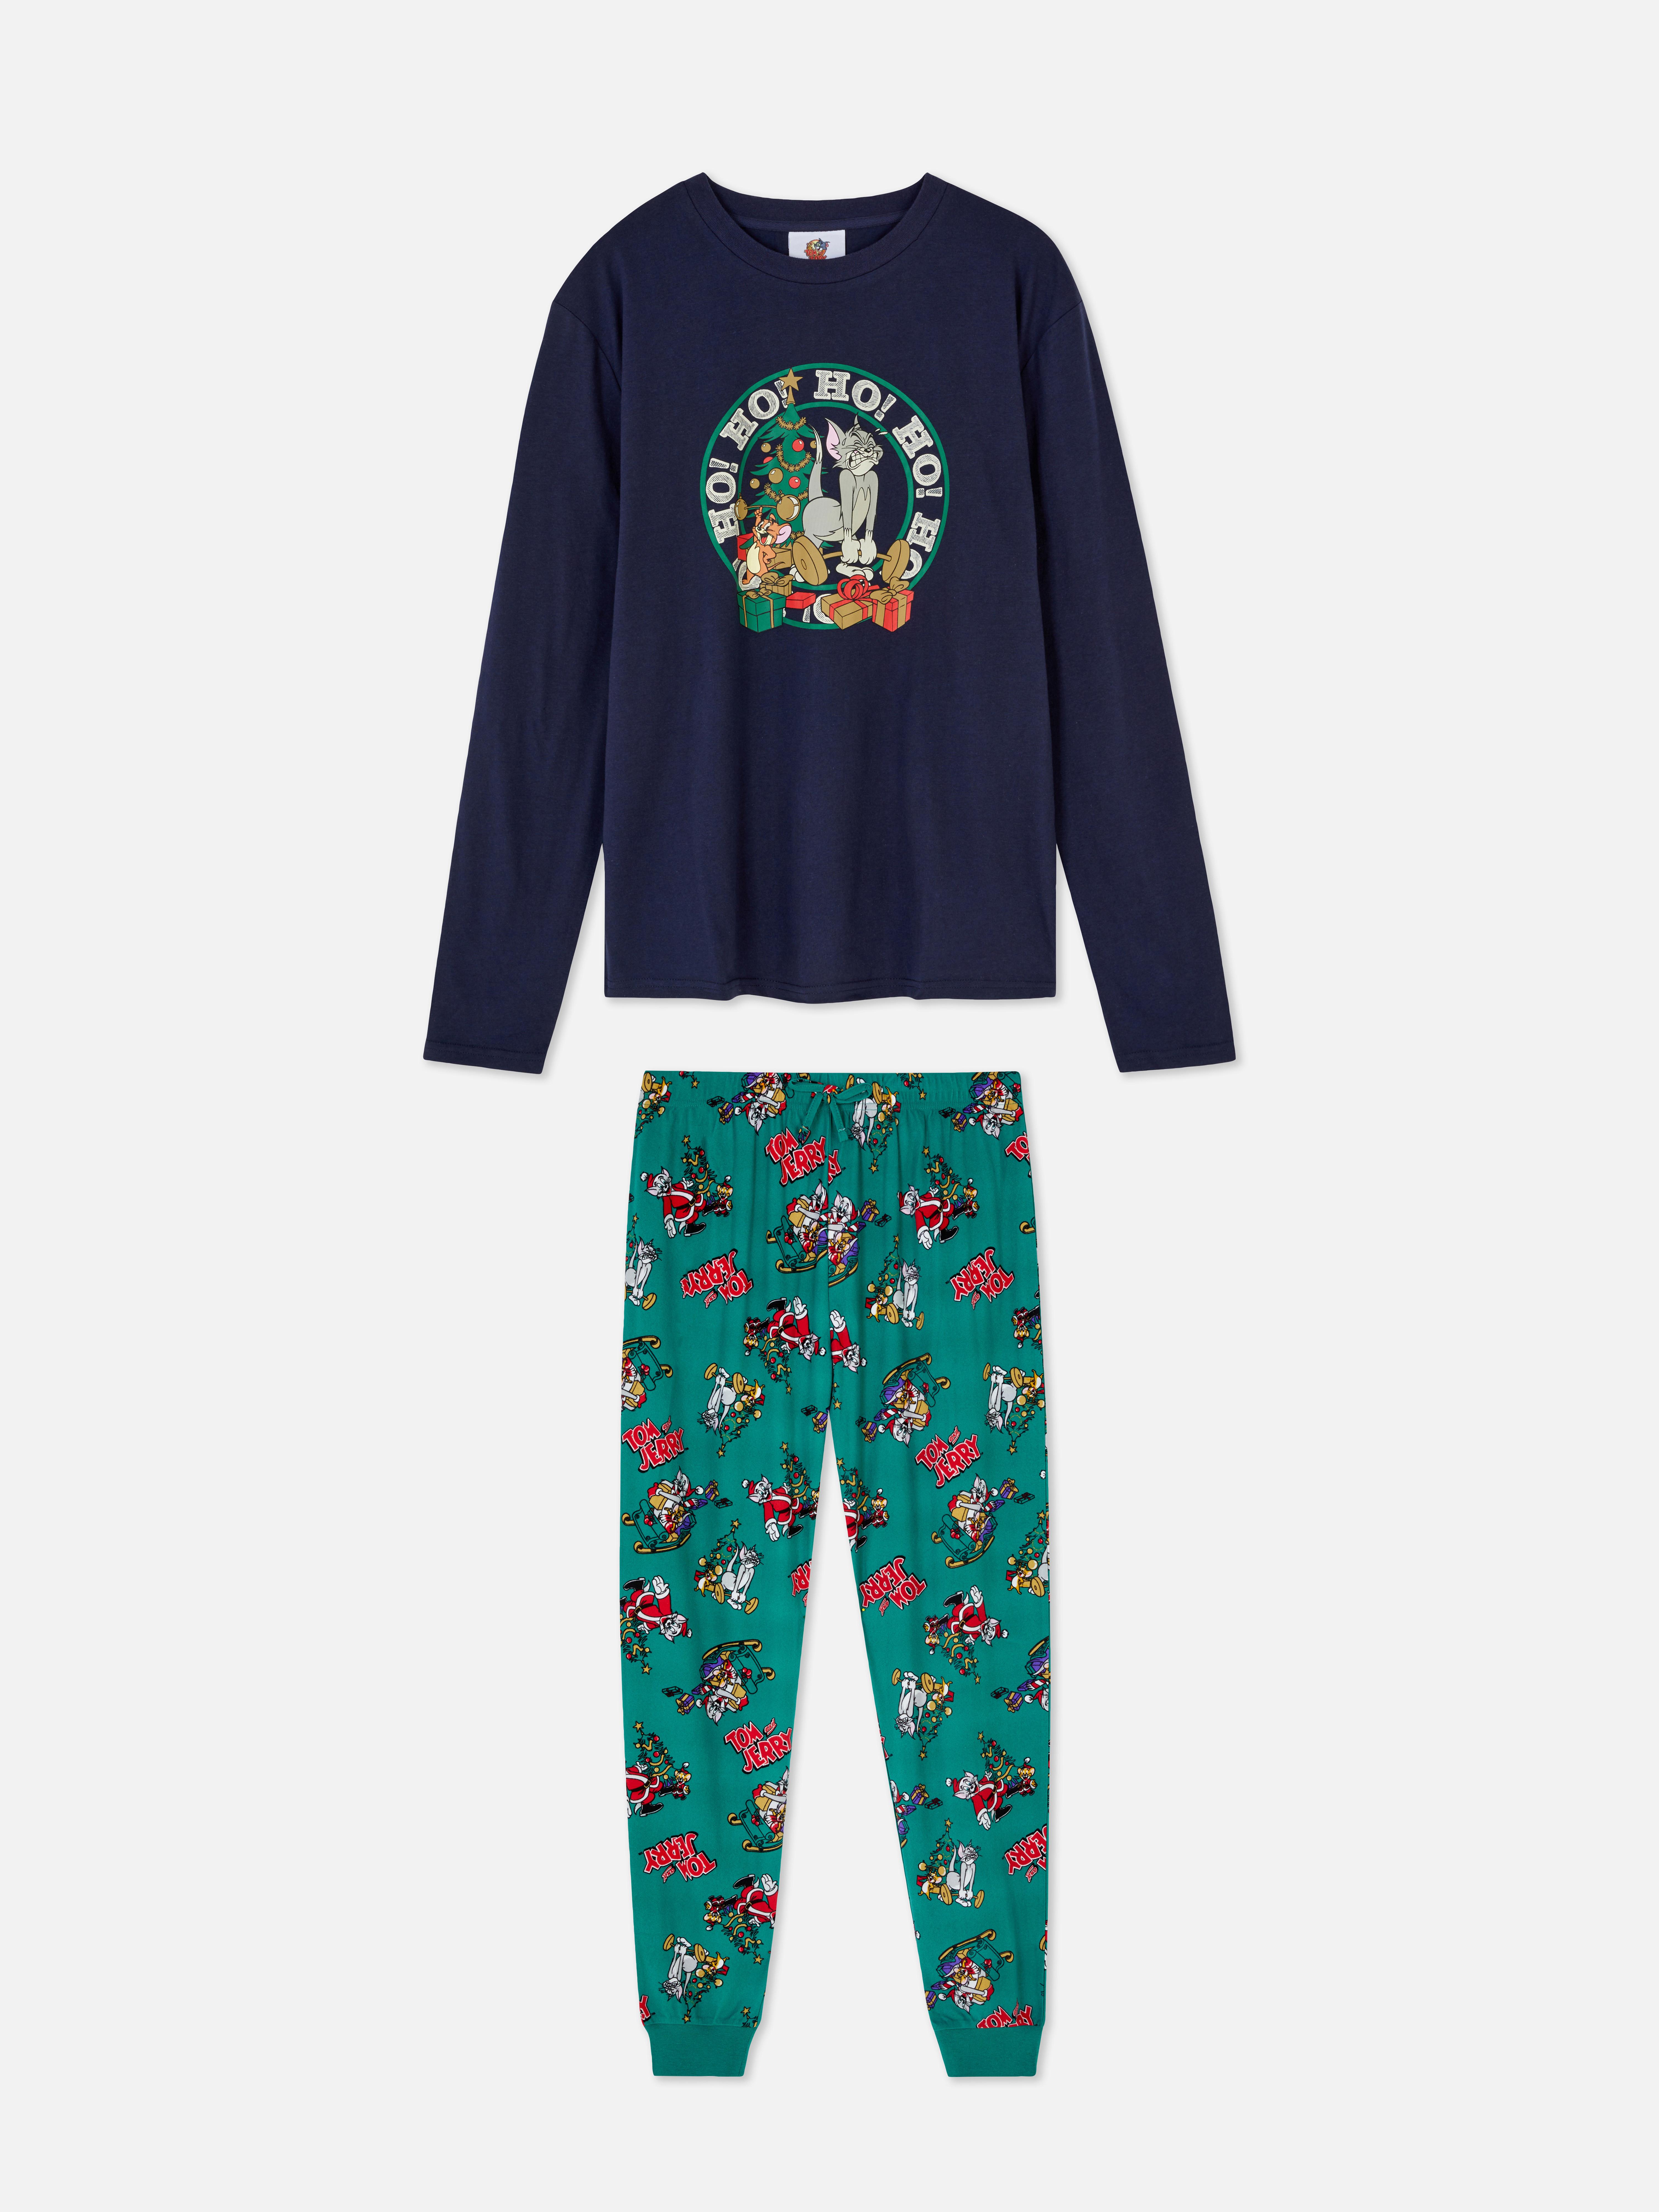 Tom and Jerry Christmas Pyjamas